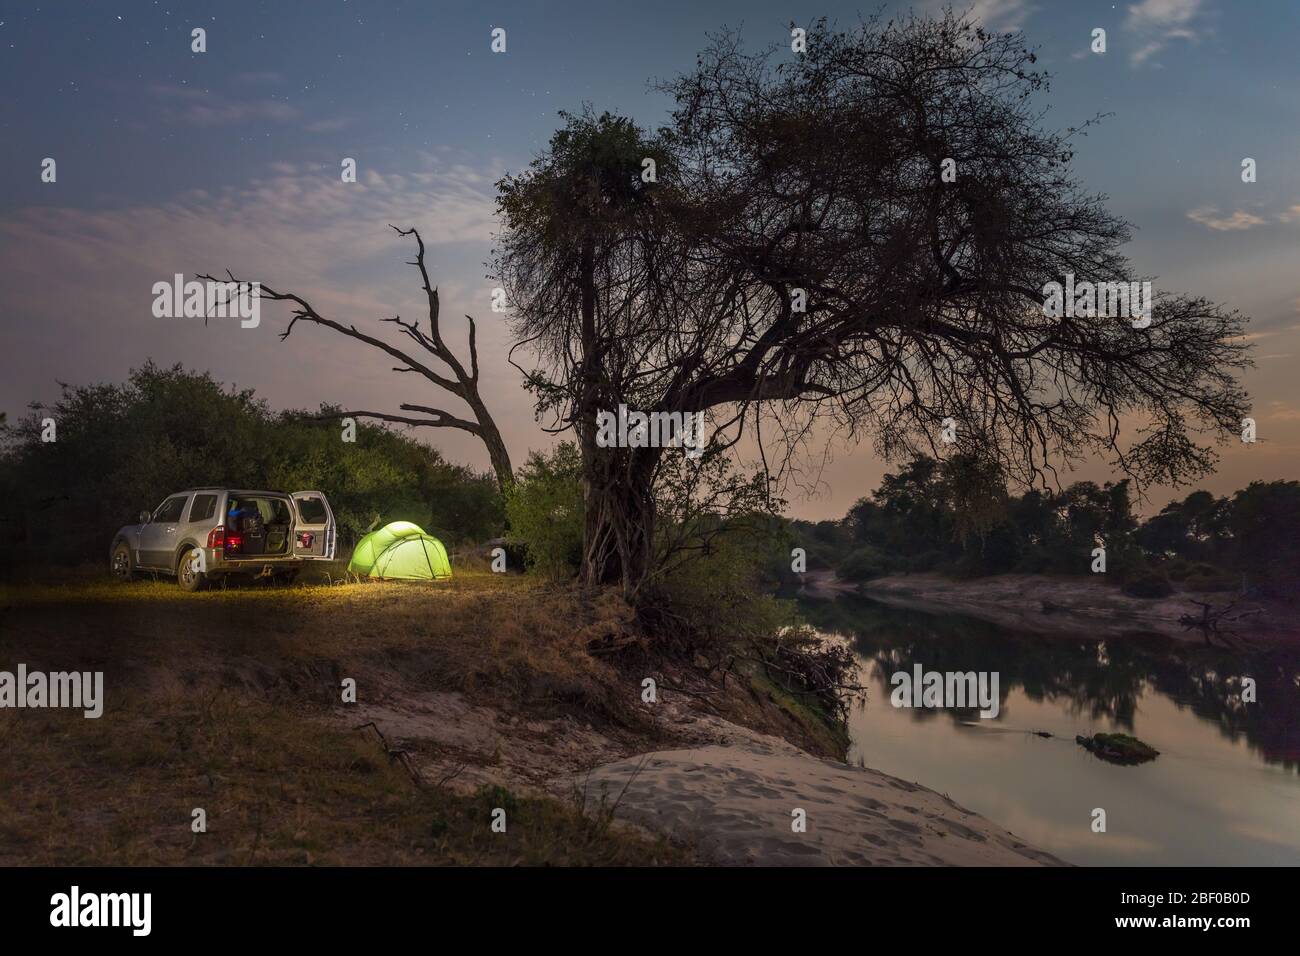 Zambezi National Park, Matabeleland North Province, Zimbabwe offers camping on the banks of the mighty Zambezi River. Stock Photo